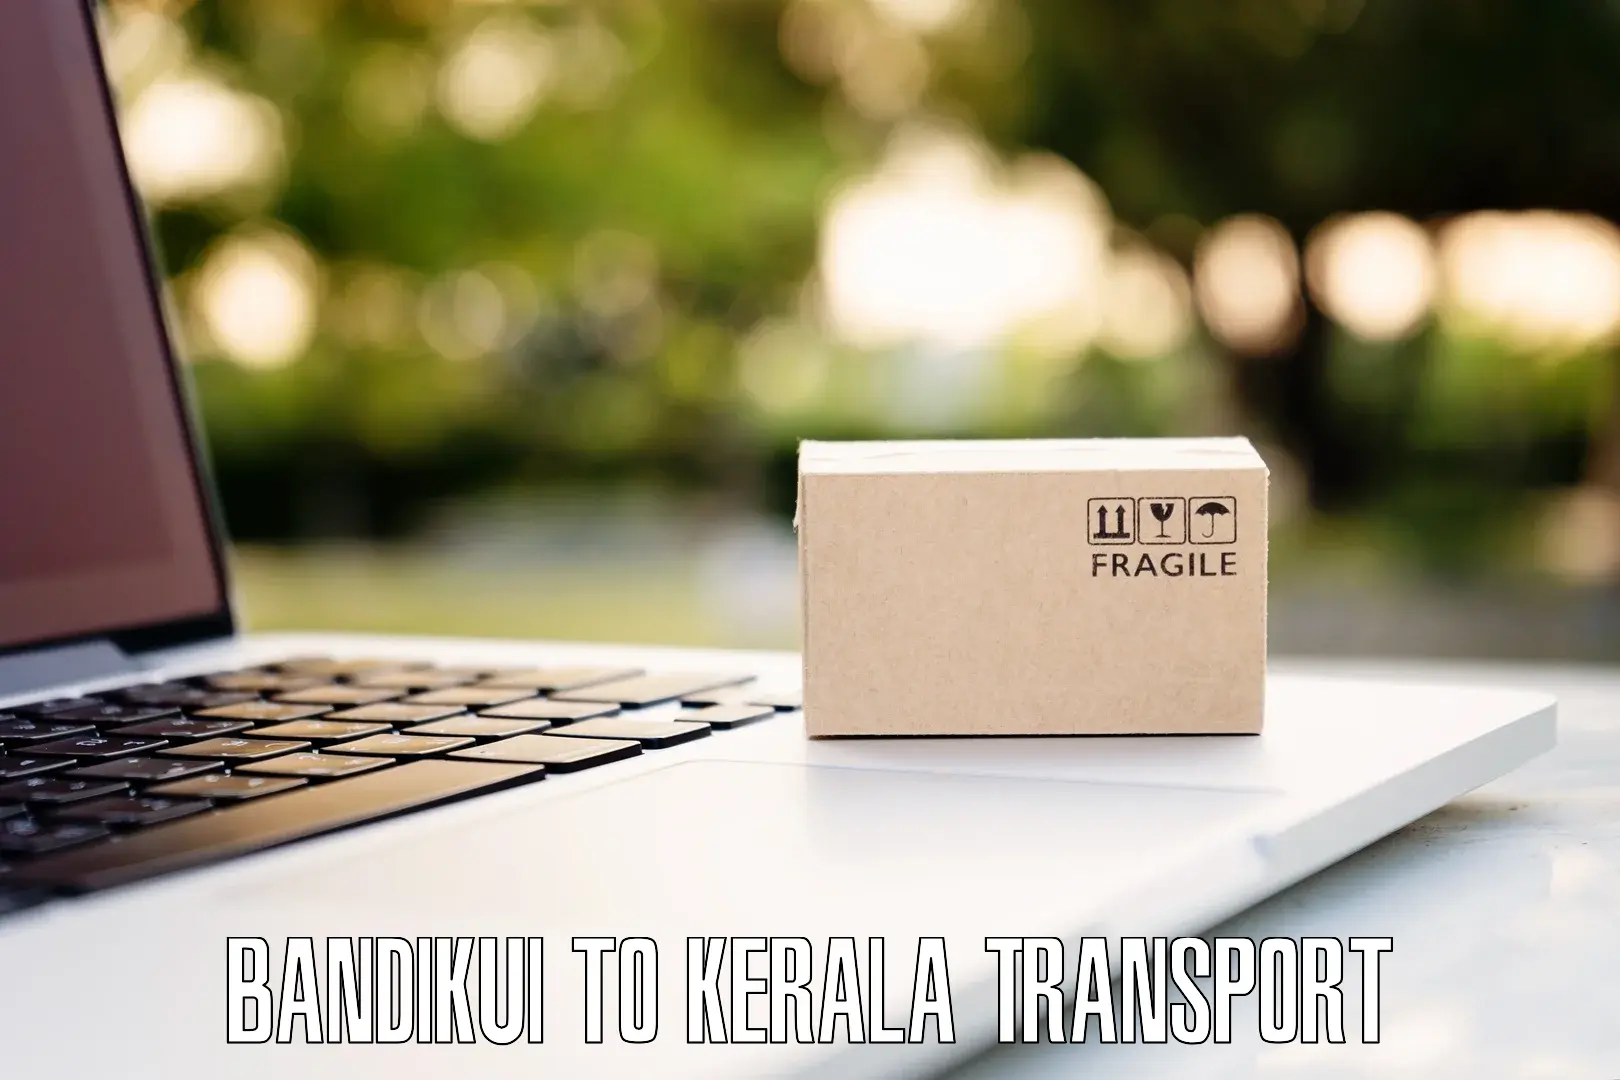 Nearest transport service Bandikui to Chungathara